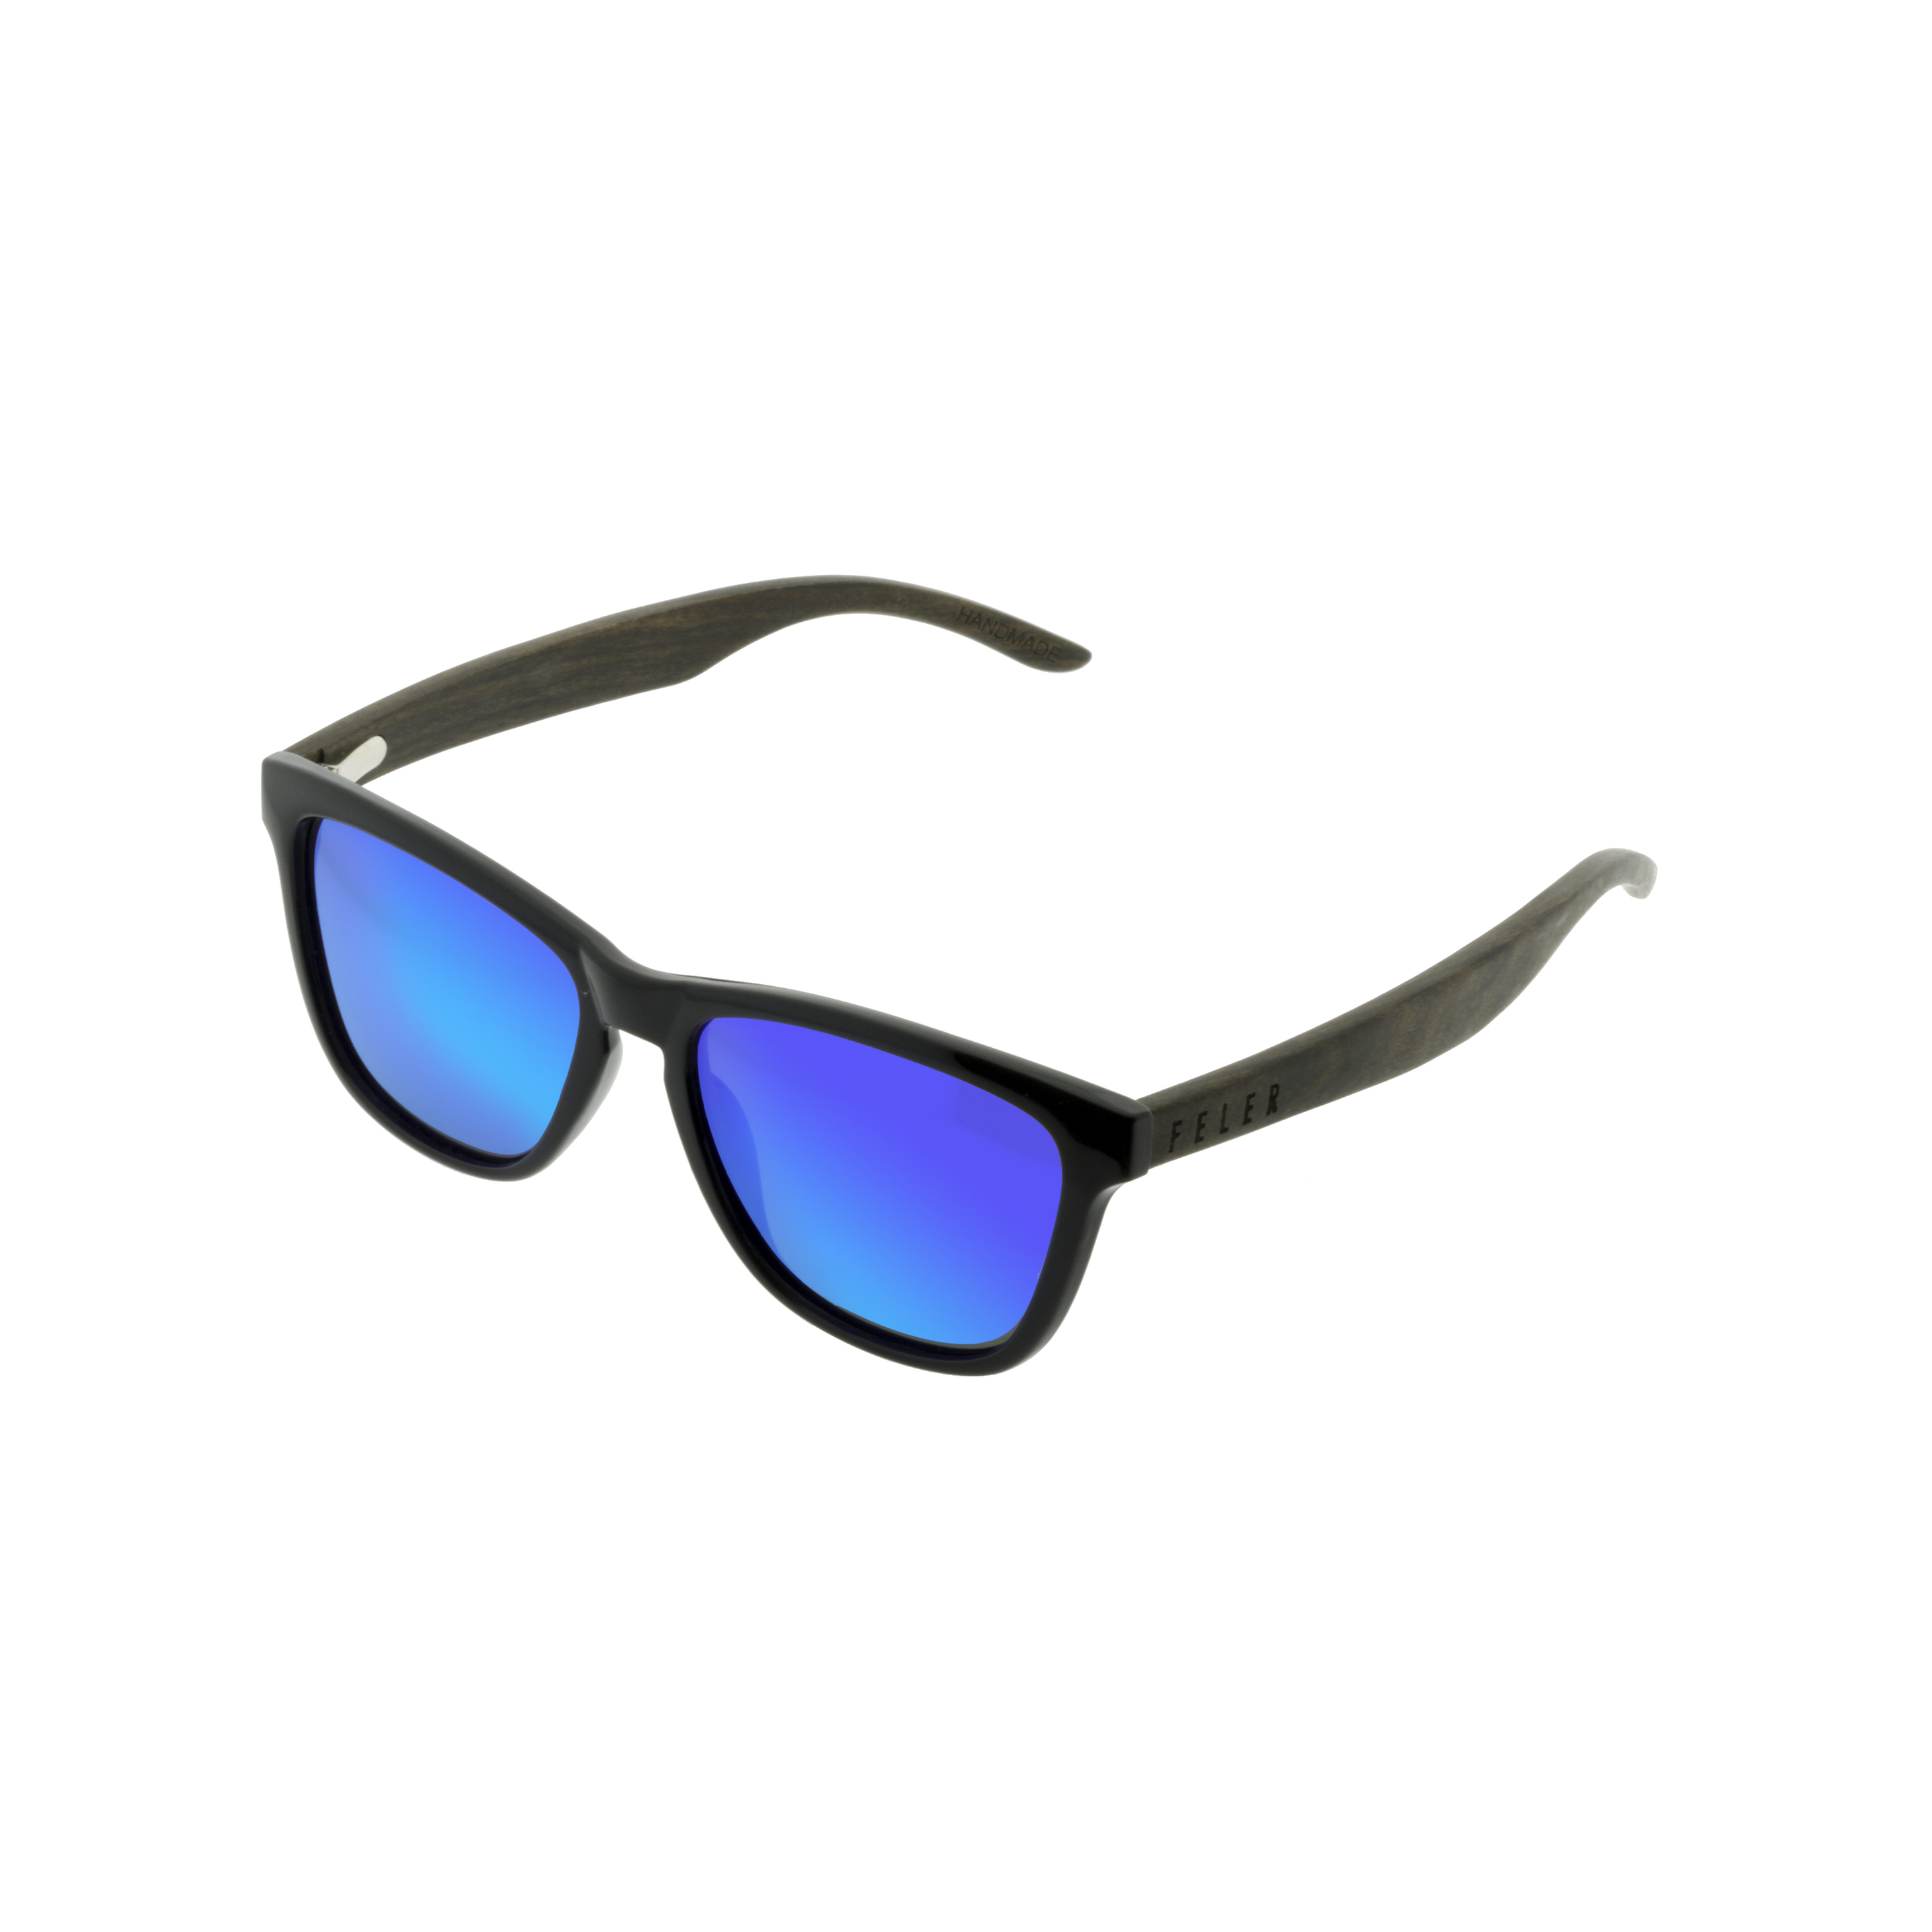 Gafas De Sol Feler | Regular Hibrid 2 - Azul - Cuadrada MKP